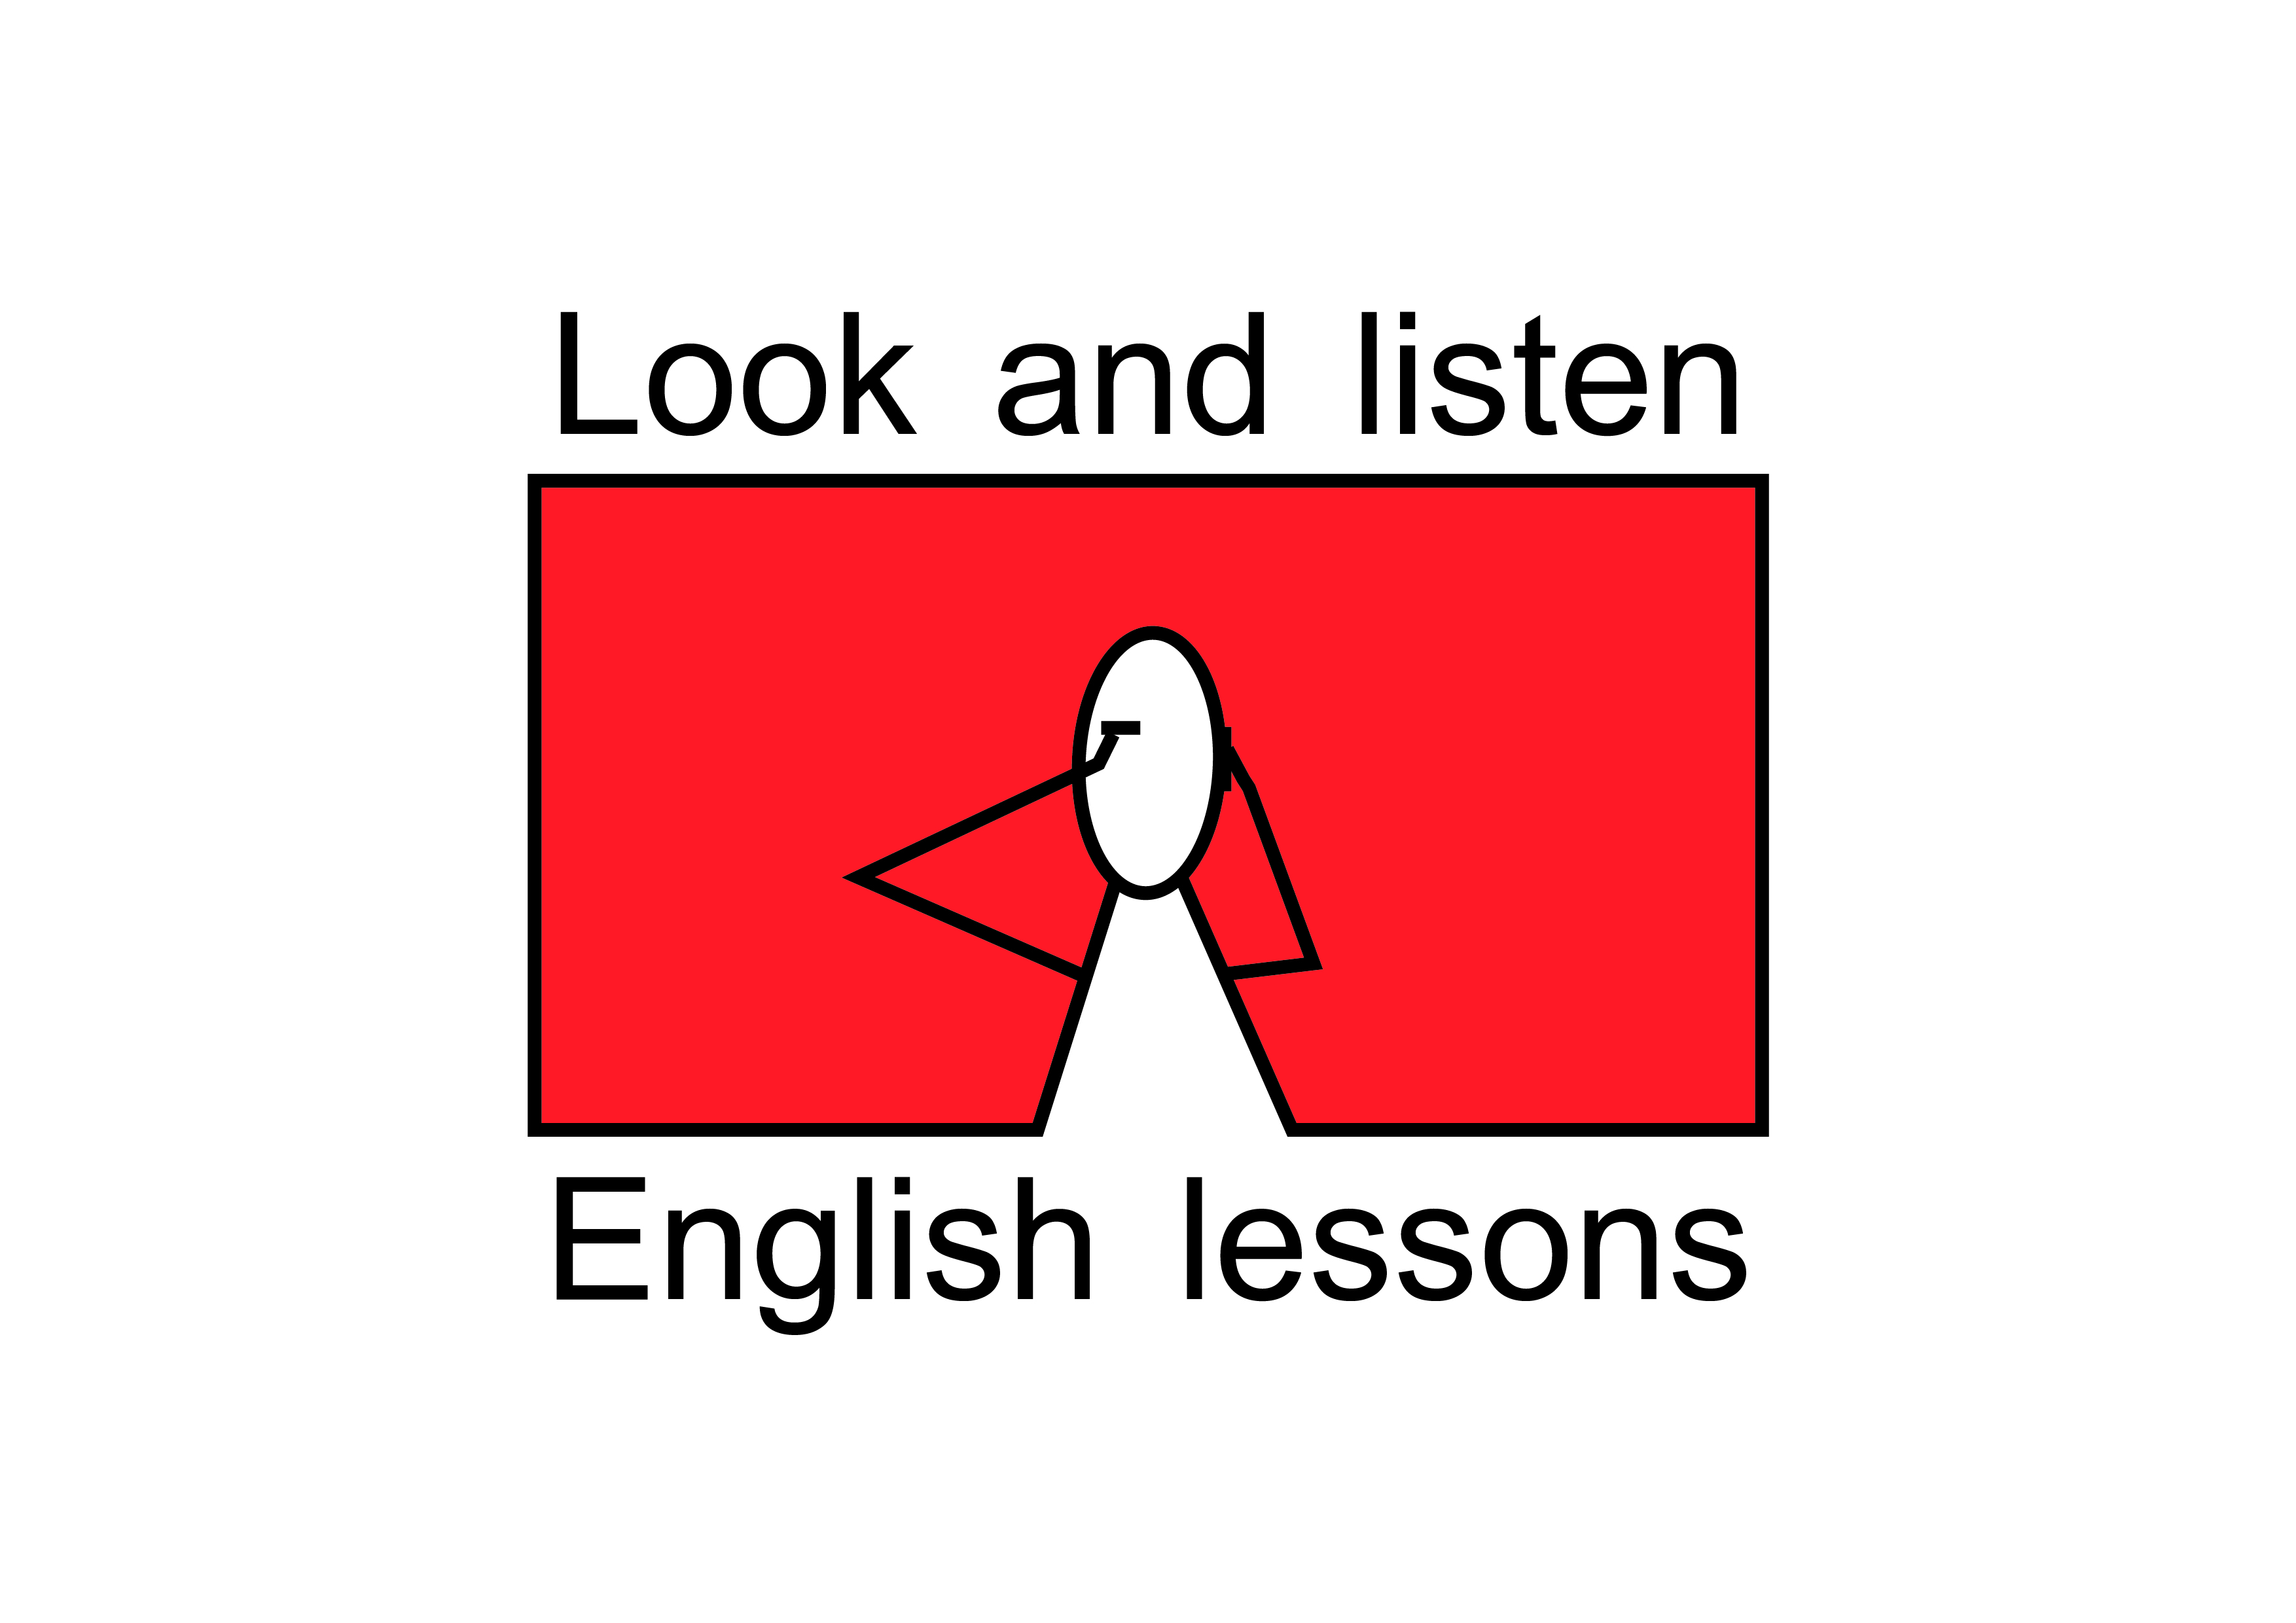 לימוד שפות - אנגלית | שעורי אנגלית ומשחק אונליין 